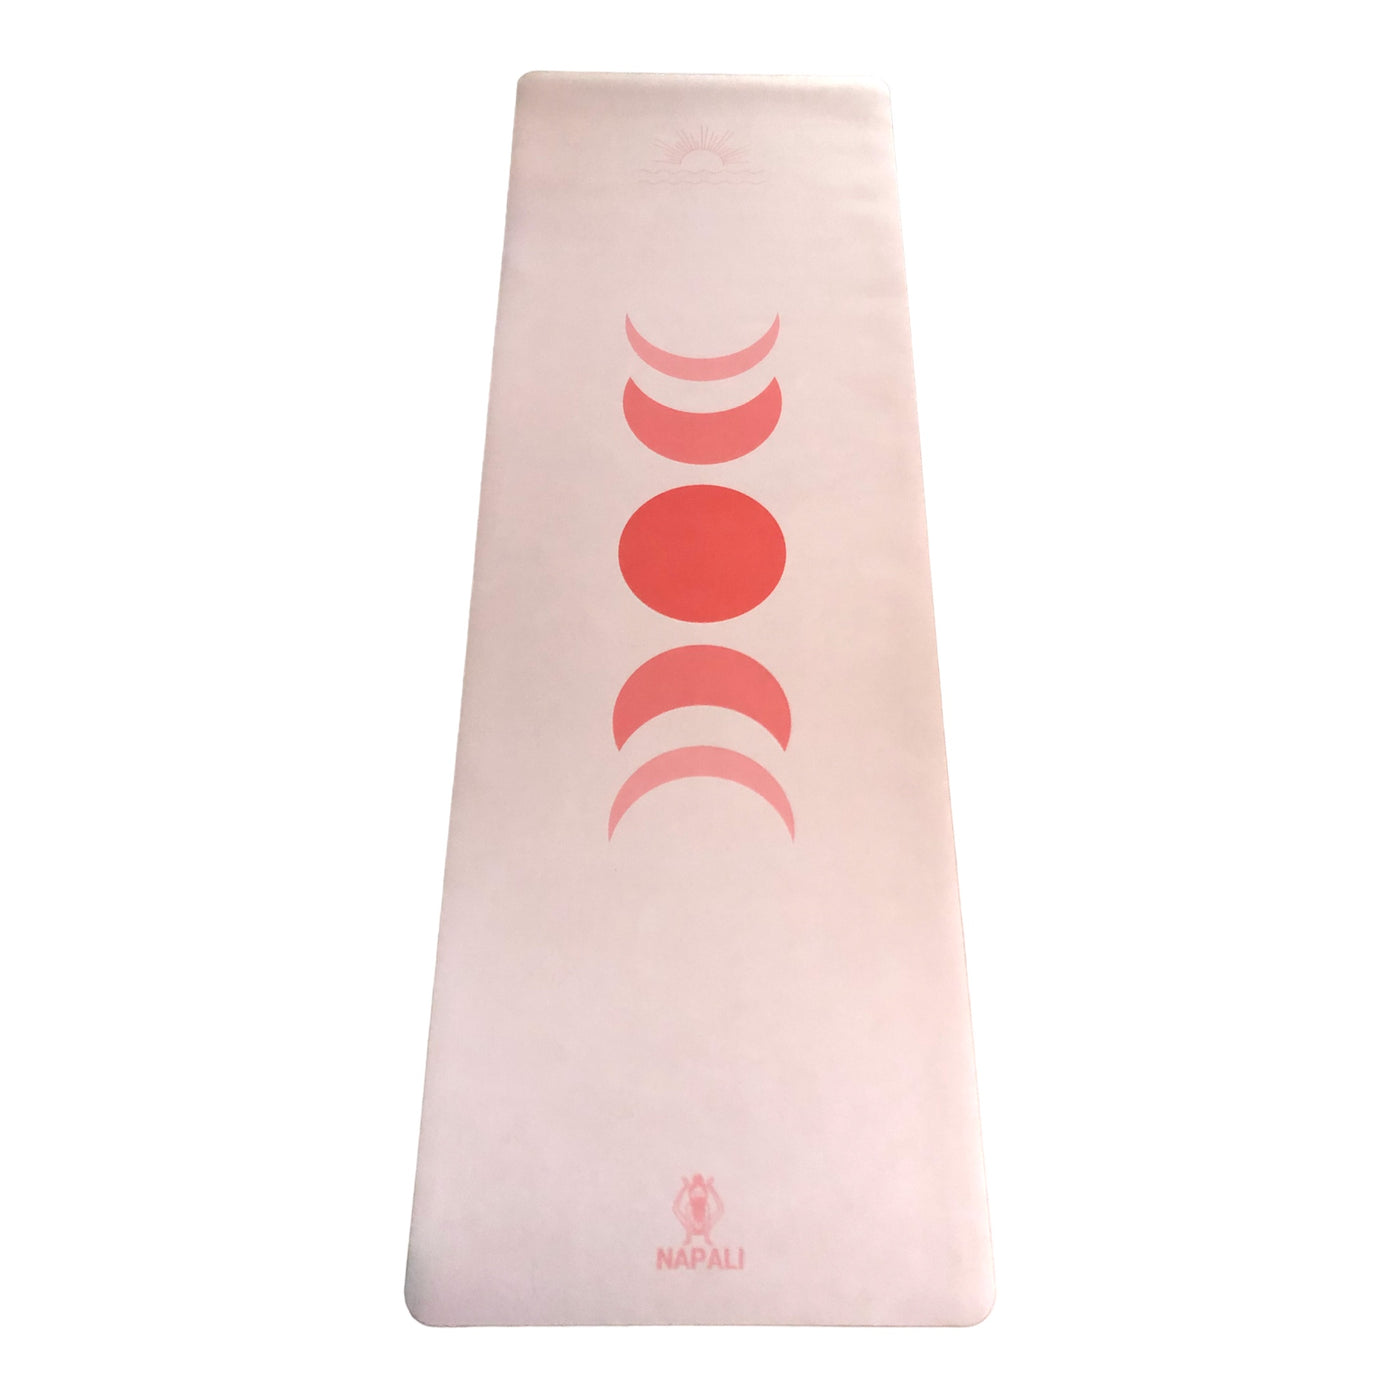 2 meter yoga mat "Pink Moon" - extra long -